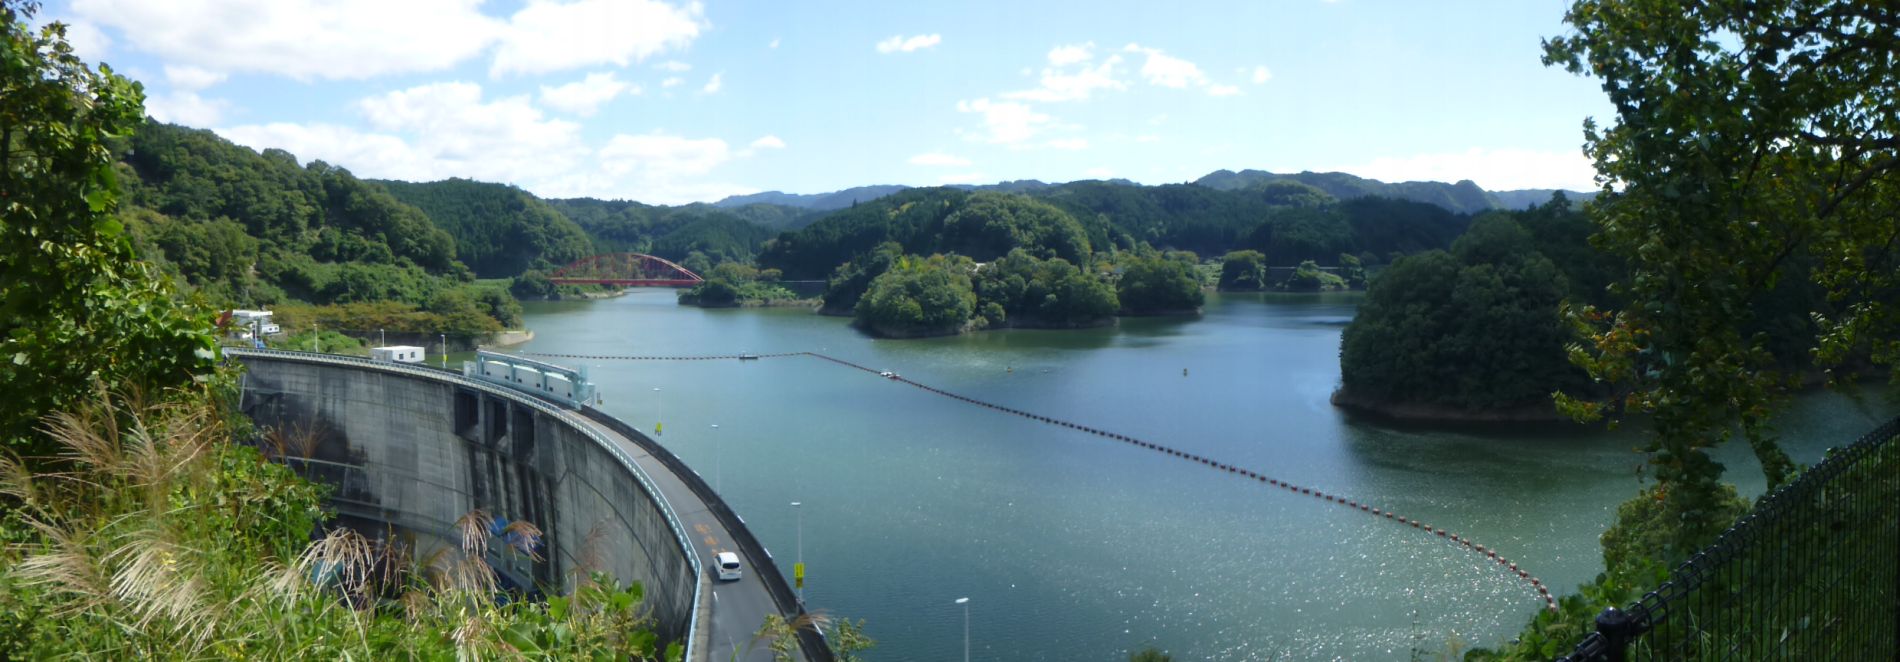 比奈知ダム－青蓮寺ダムのコンボはマジお勧め 公園・キャンプ場・展